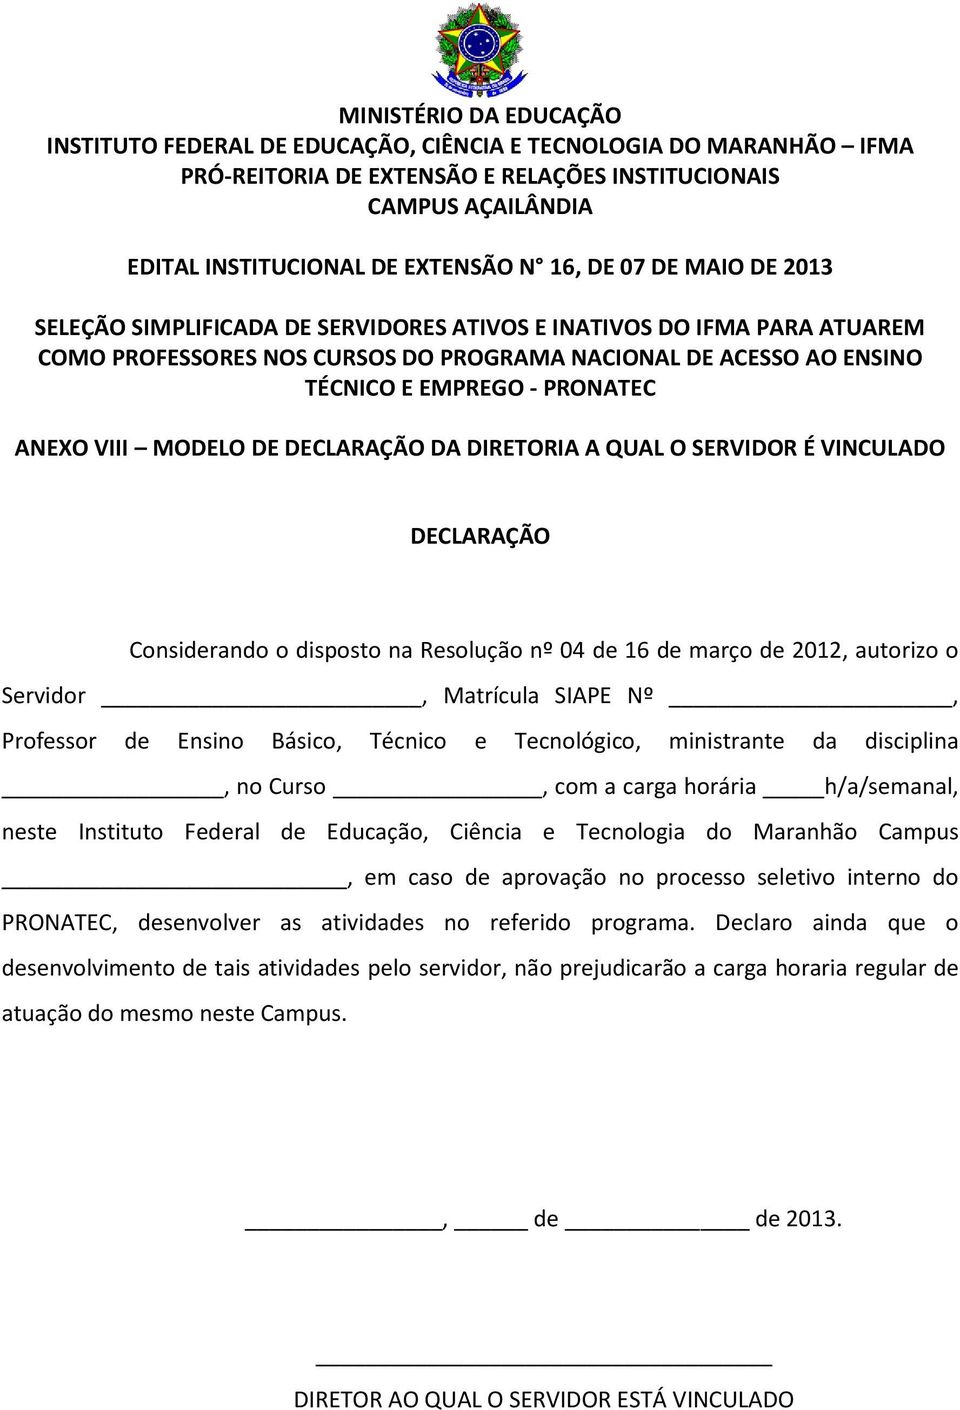 Educação, Ciência e Tecnologia do Maranhão Campus, em caso de aprovação no processo seletivo interno do PRONATEC, desenvolver as atividades no referido programa.